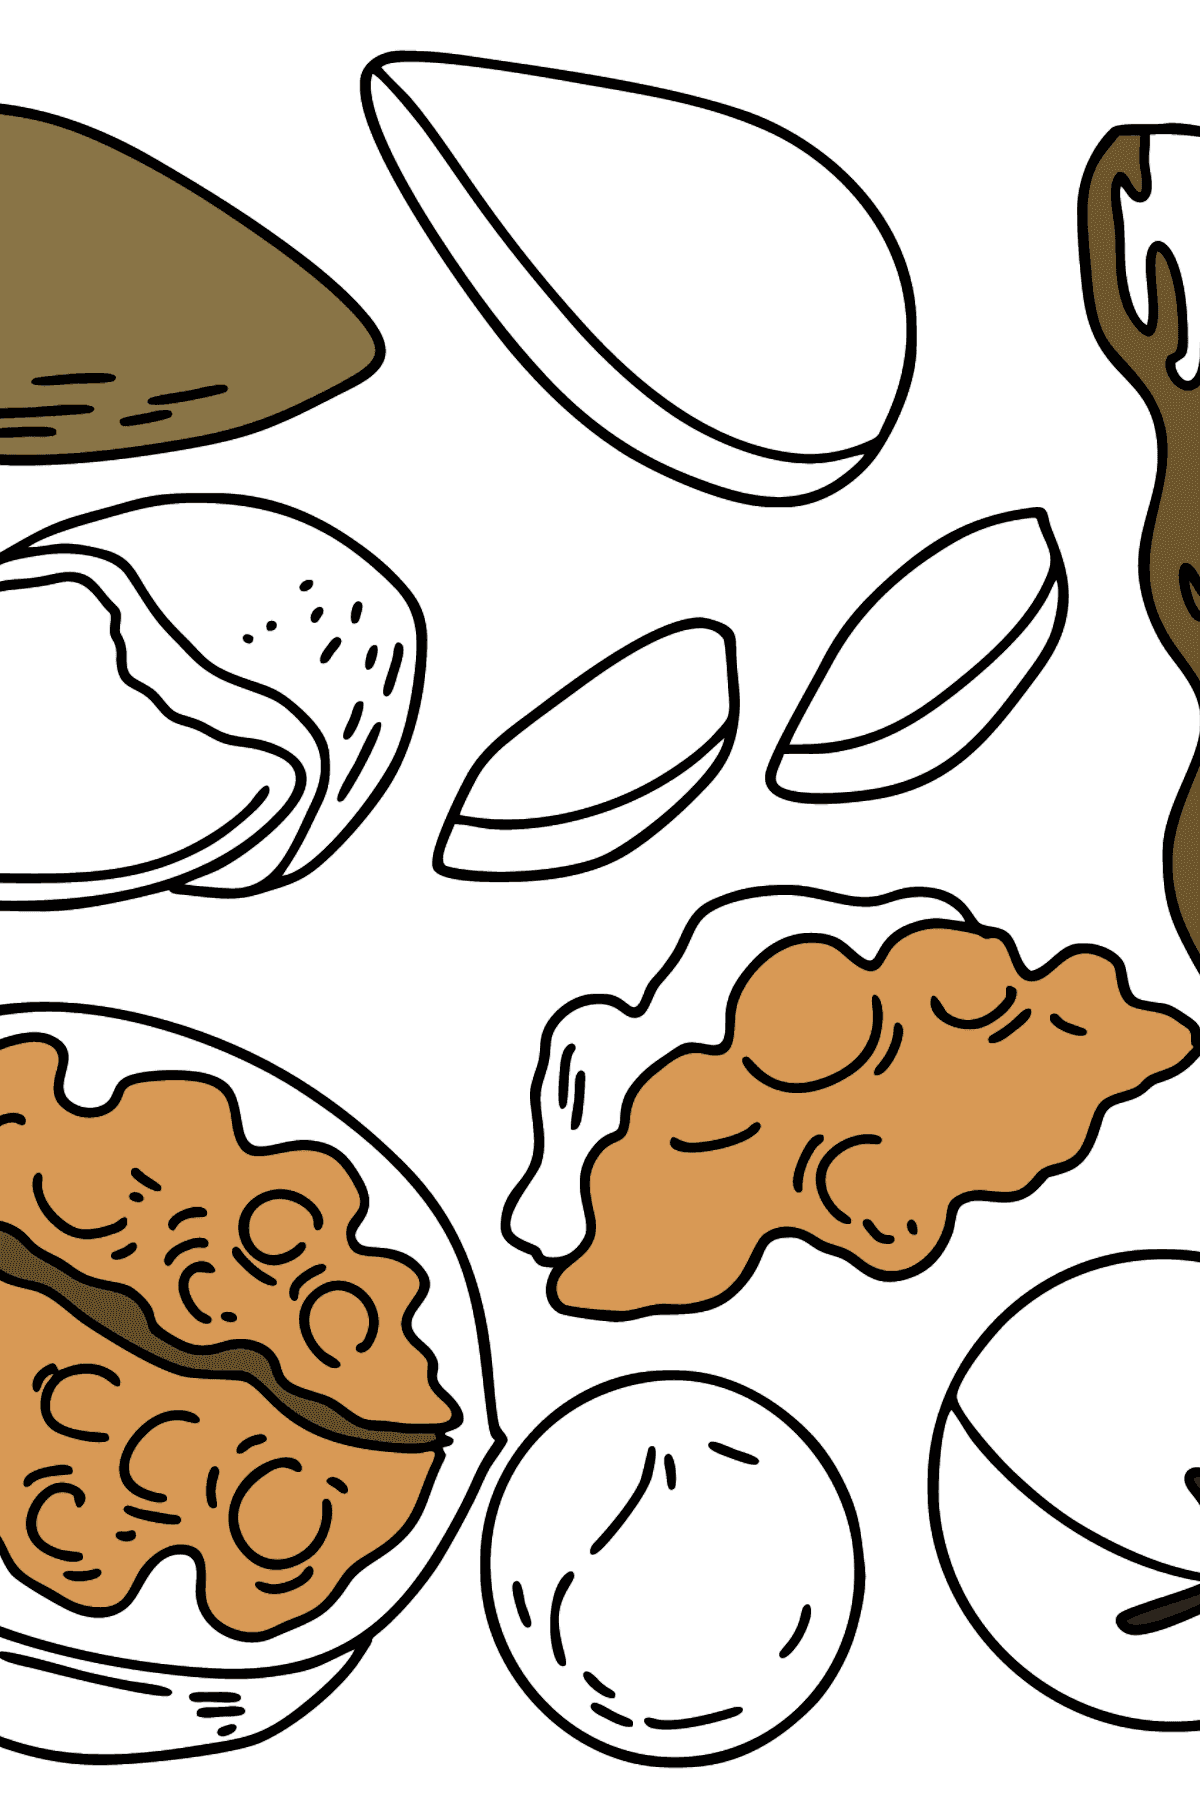 Malvorlagen oder Ausmalbilder Nüsse: Walnüsse, Macadamia, Mandeln und Erdnüsse - Malvorlagen für Kinder